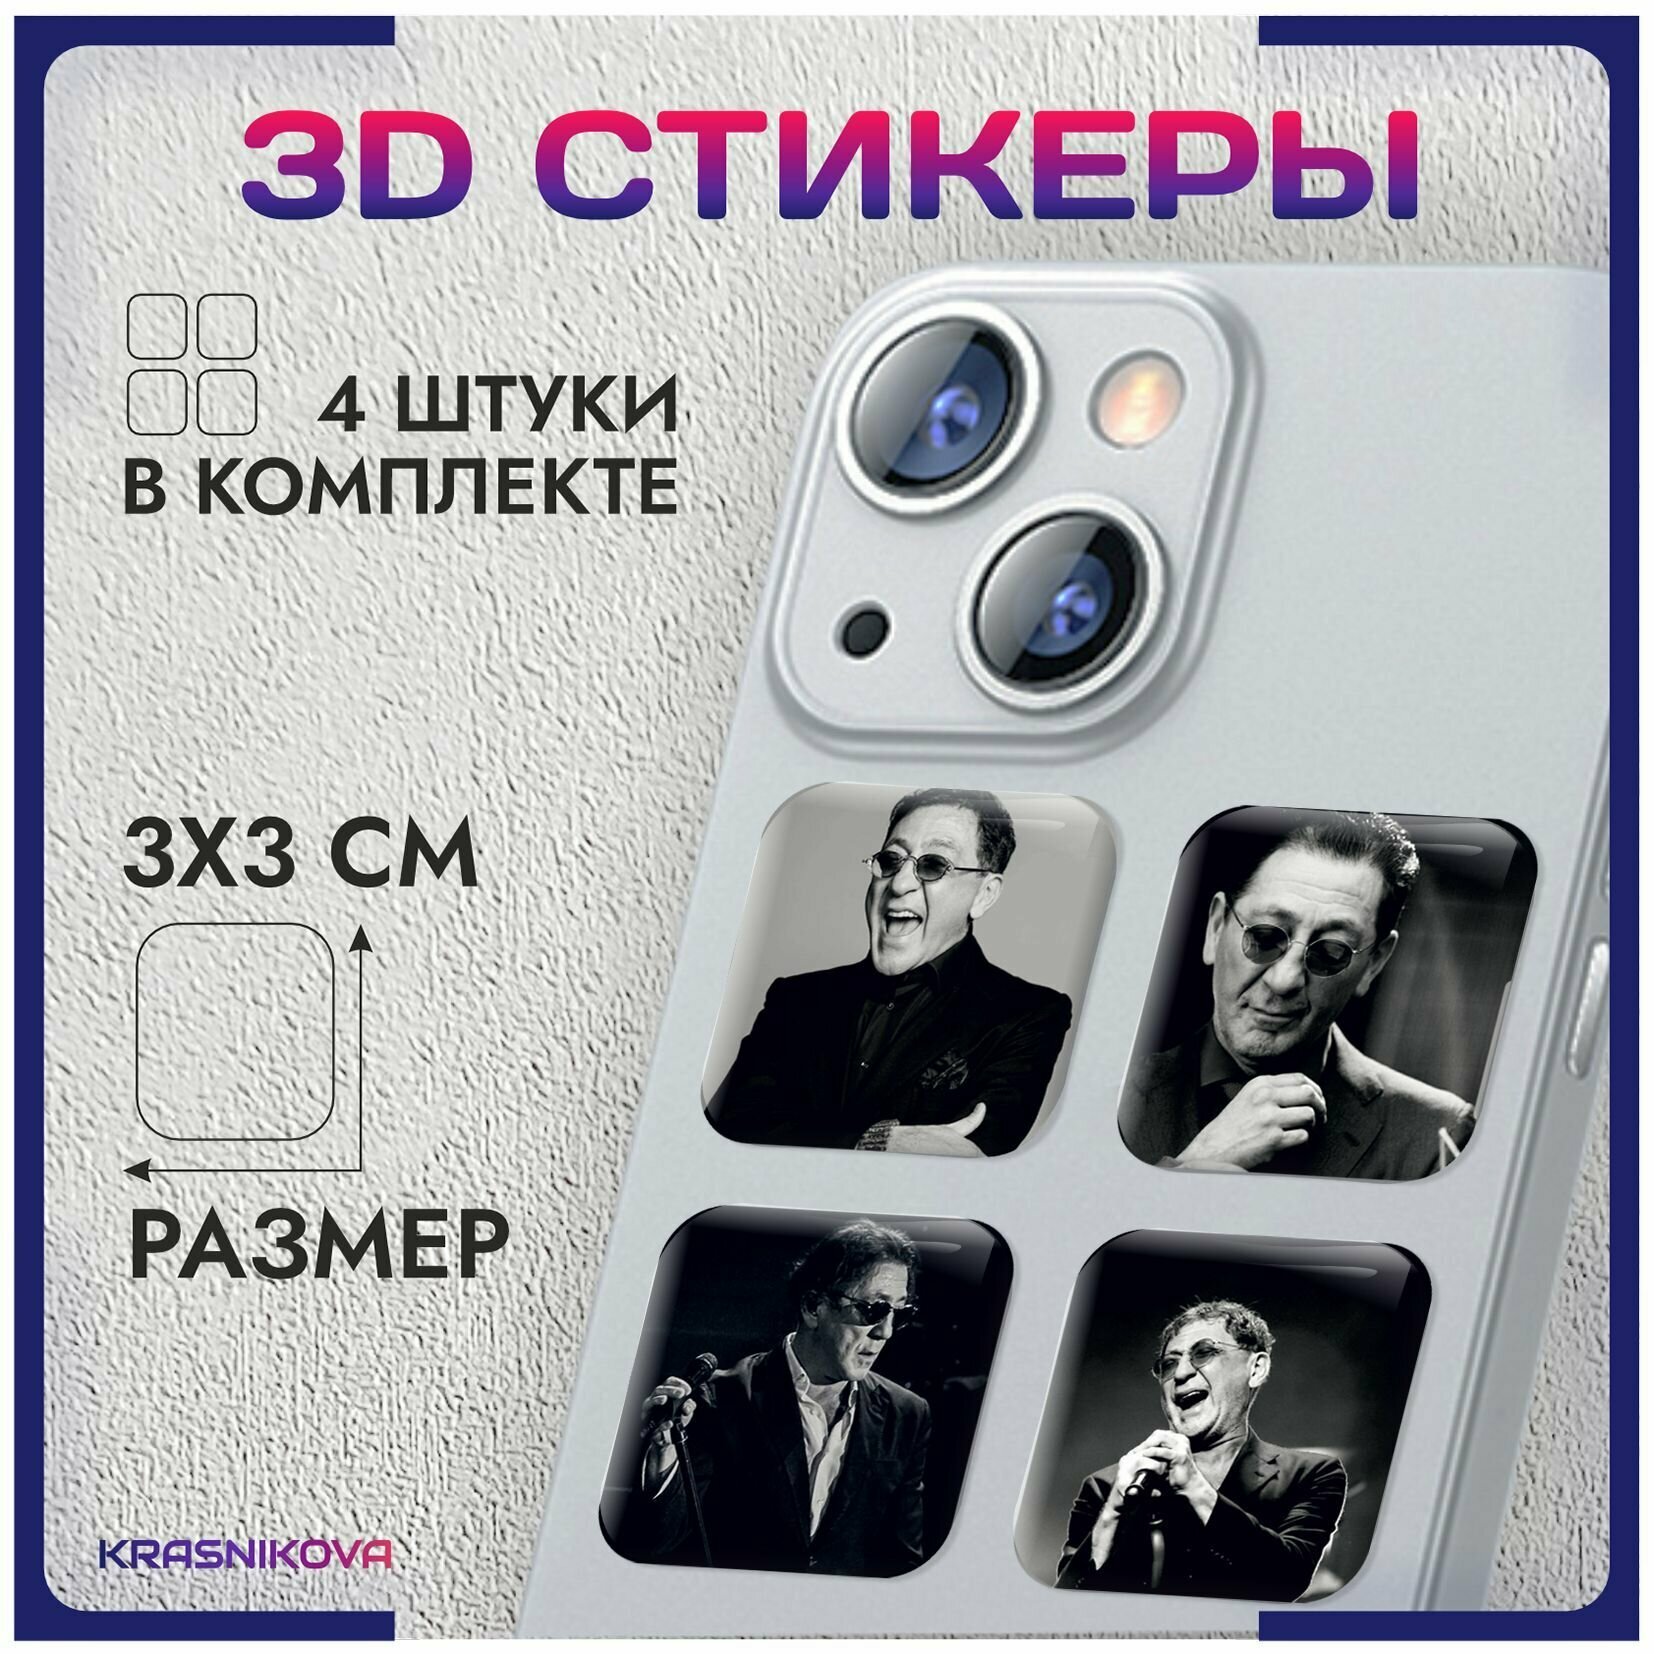 3D стикеры на телефон объемные наклейки Григорий Лепс v1